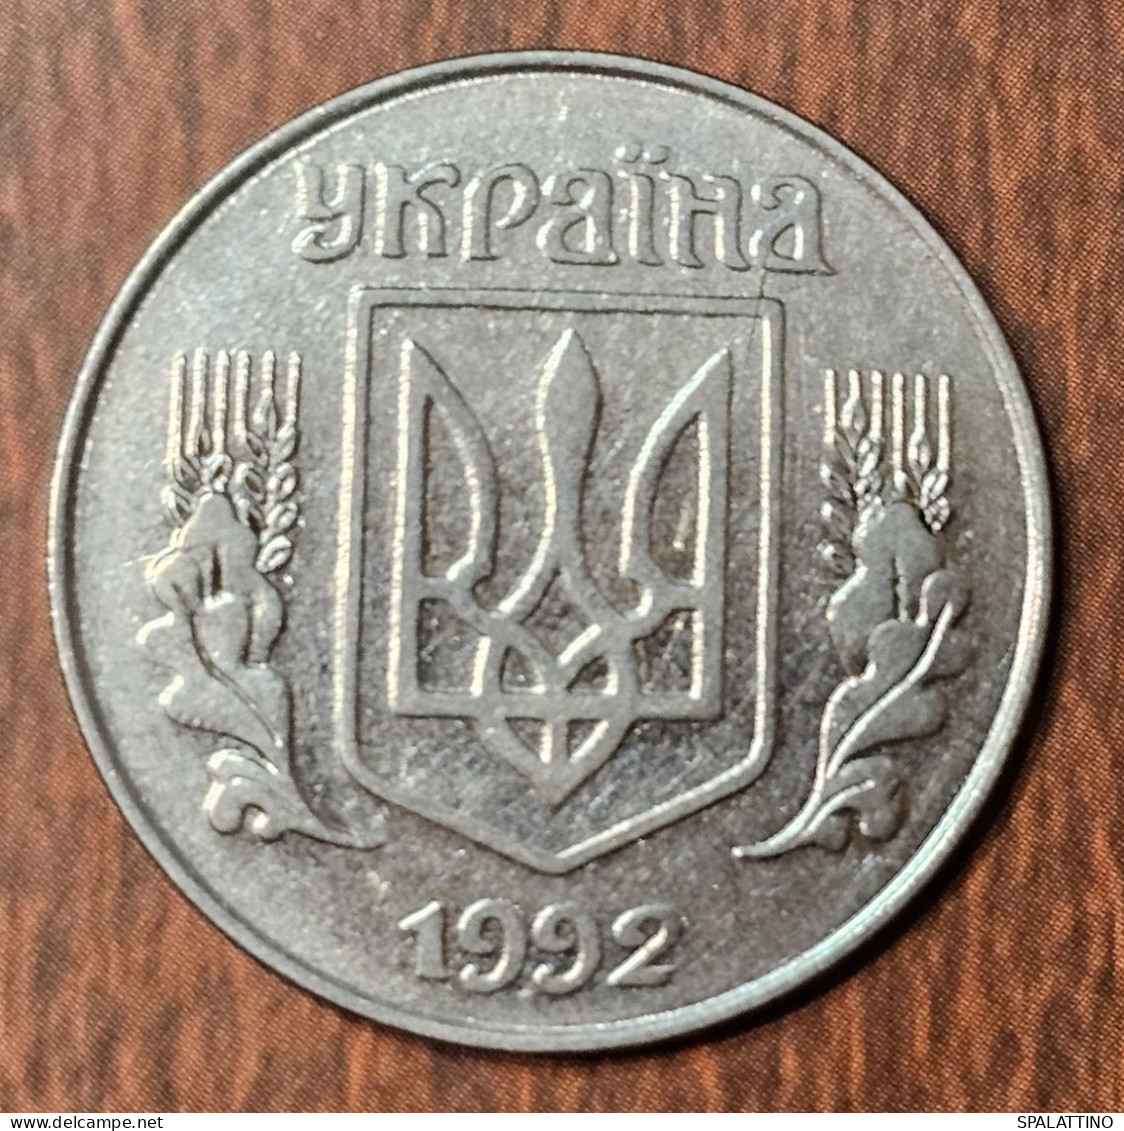 UKRAINE- 5 KOPIIOK 1992. - Ukraine